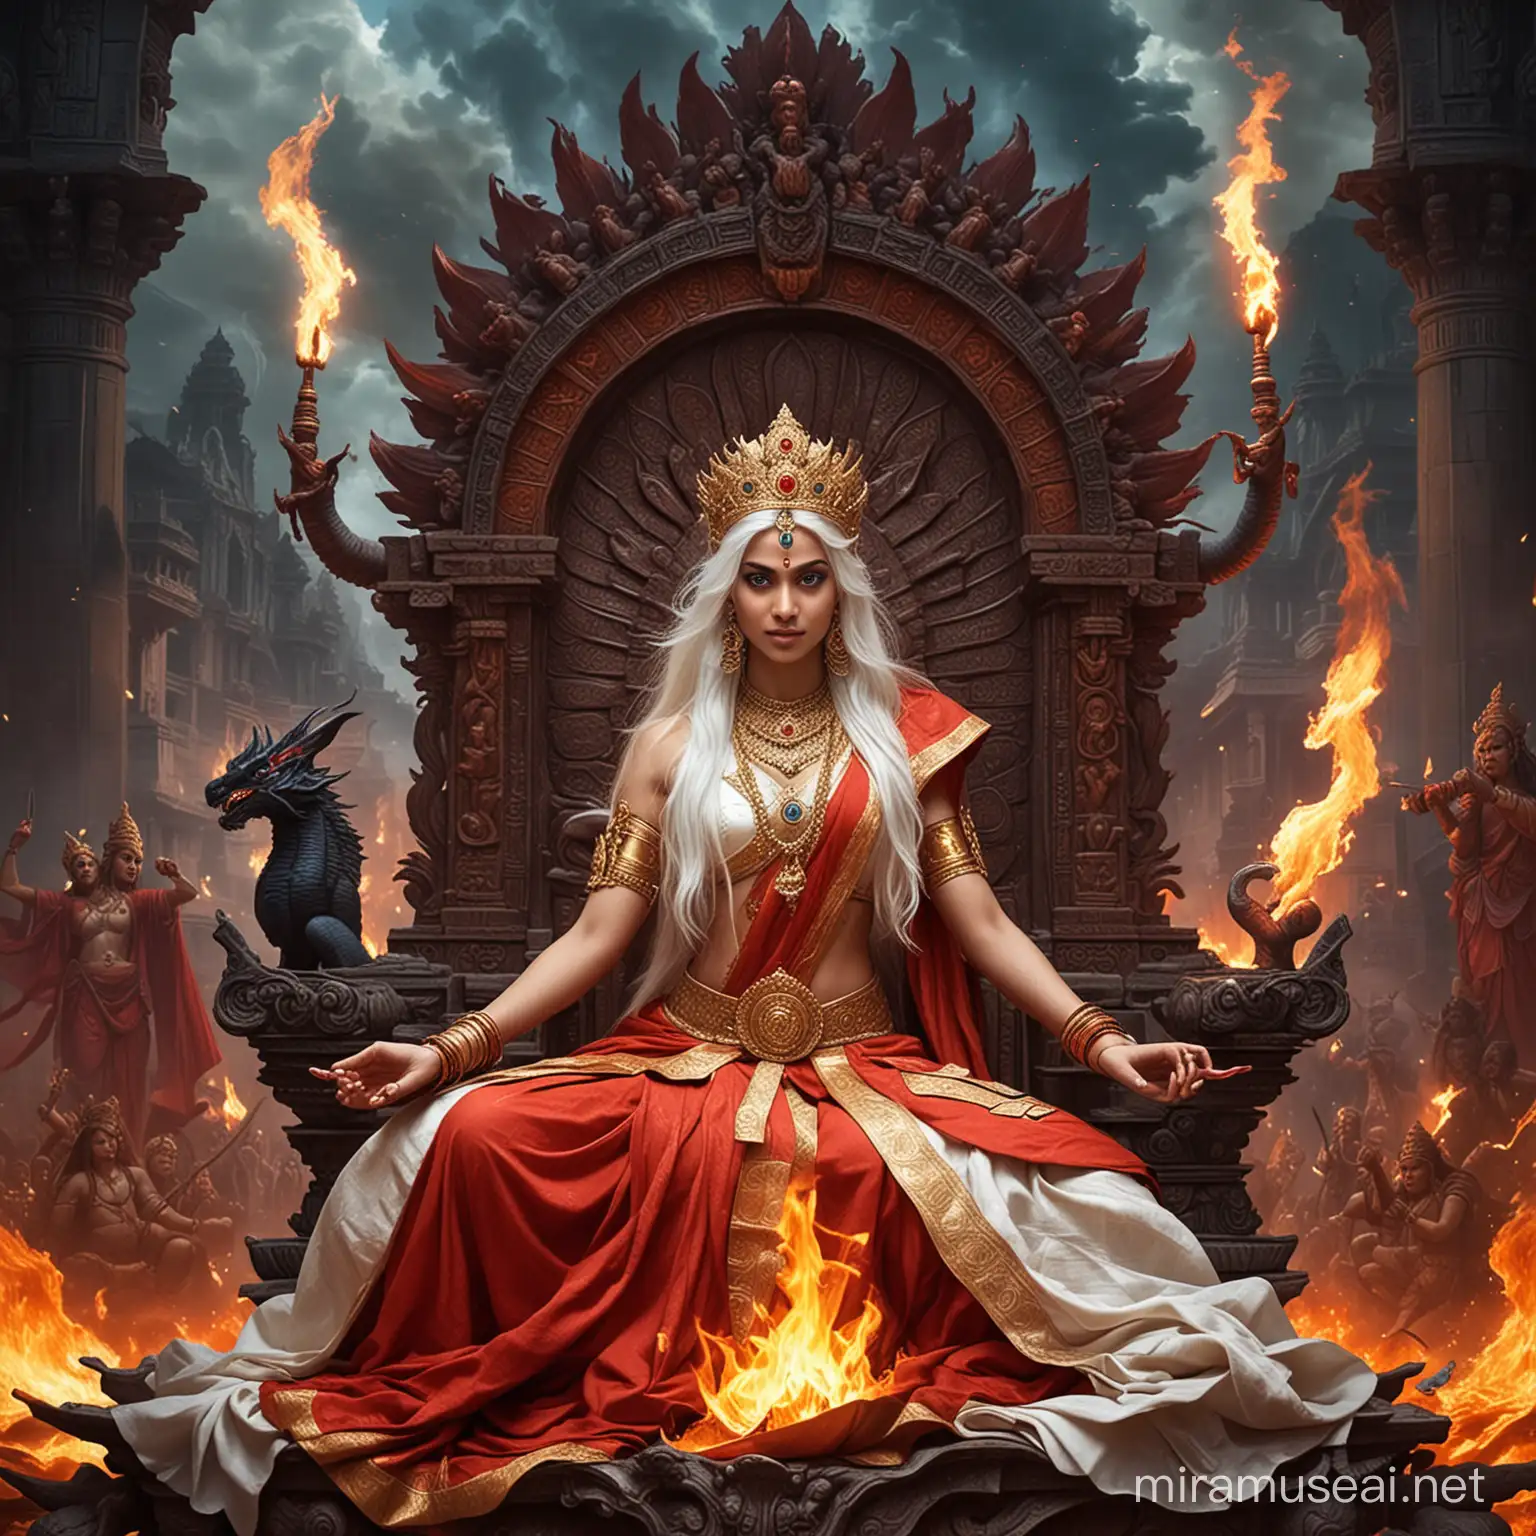 ES
avatar

Imagen disponible 7 días. Descarga pronto.




















More

Prompt

Diosa emperatriz hindu hermosa joven de cabellos blancos largos y ojos azules vestida como Diosa emperatriz hindu en combate sentada en un trono majestuosa y espectacular rodeada de fuego que le sale por todas partes, rodeada de diosas y dioses hindus demoníacas Sentadas en posición flor de loto, y de fondo un gigantesco palacio hindu tenebroso y la diosa Kali y un gigantesco dragón rojo y la palabra kayashiel y vishnu karma escrita con letras de fuego

Descargar

UPSCALE

